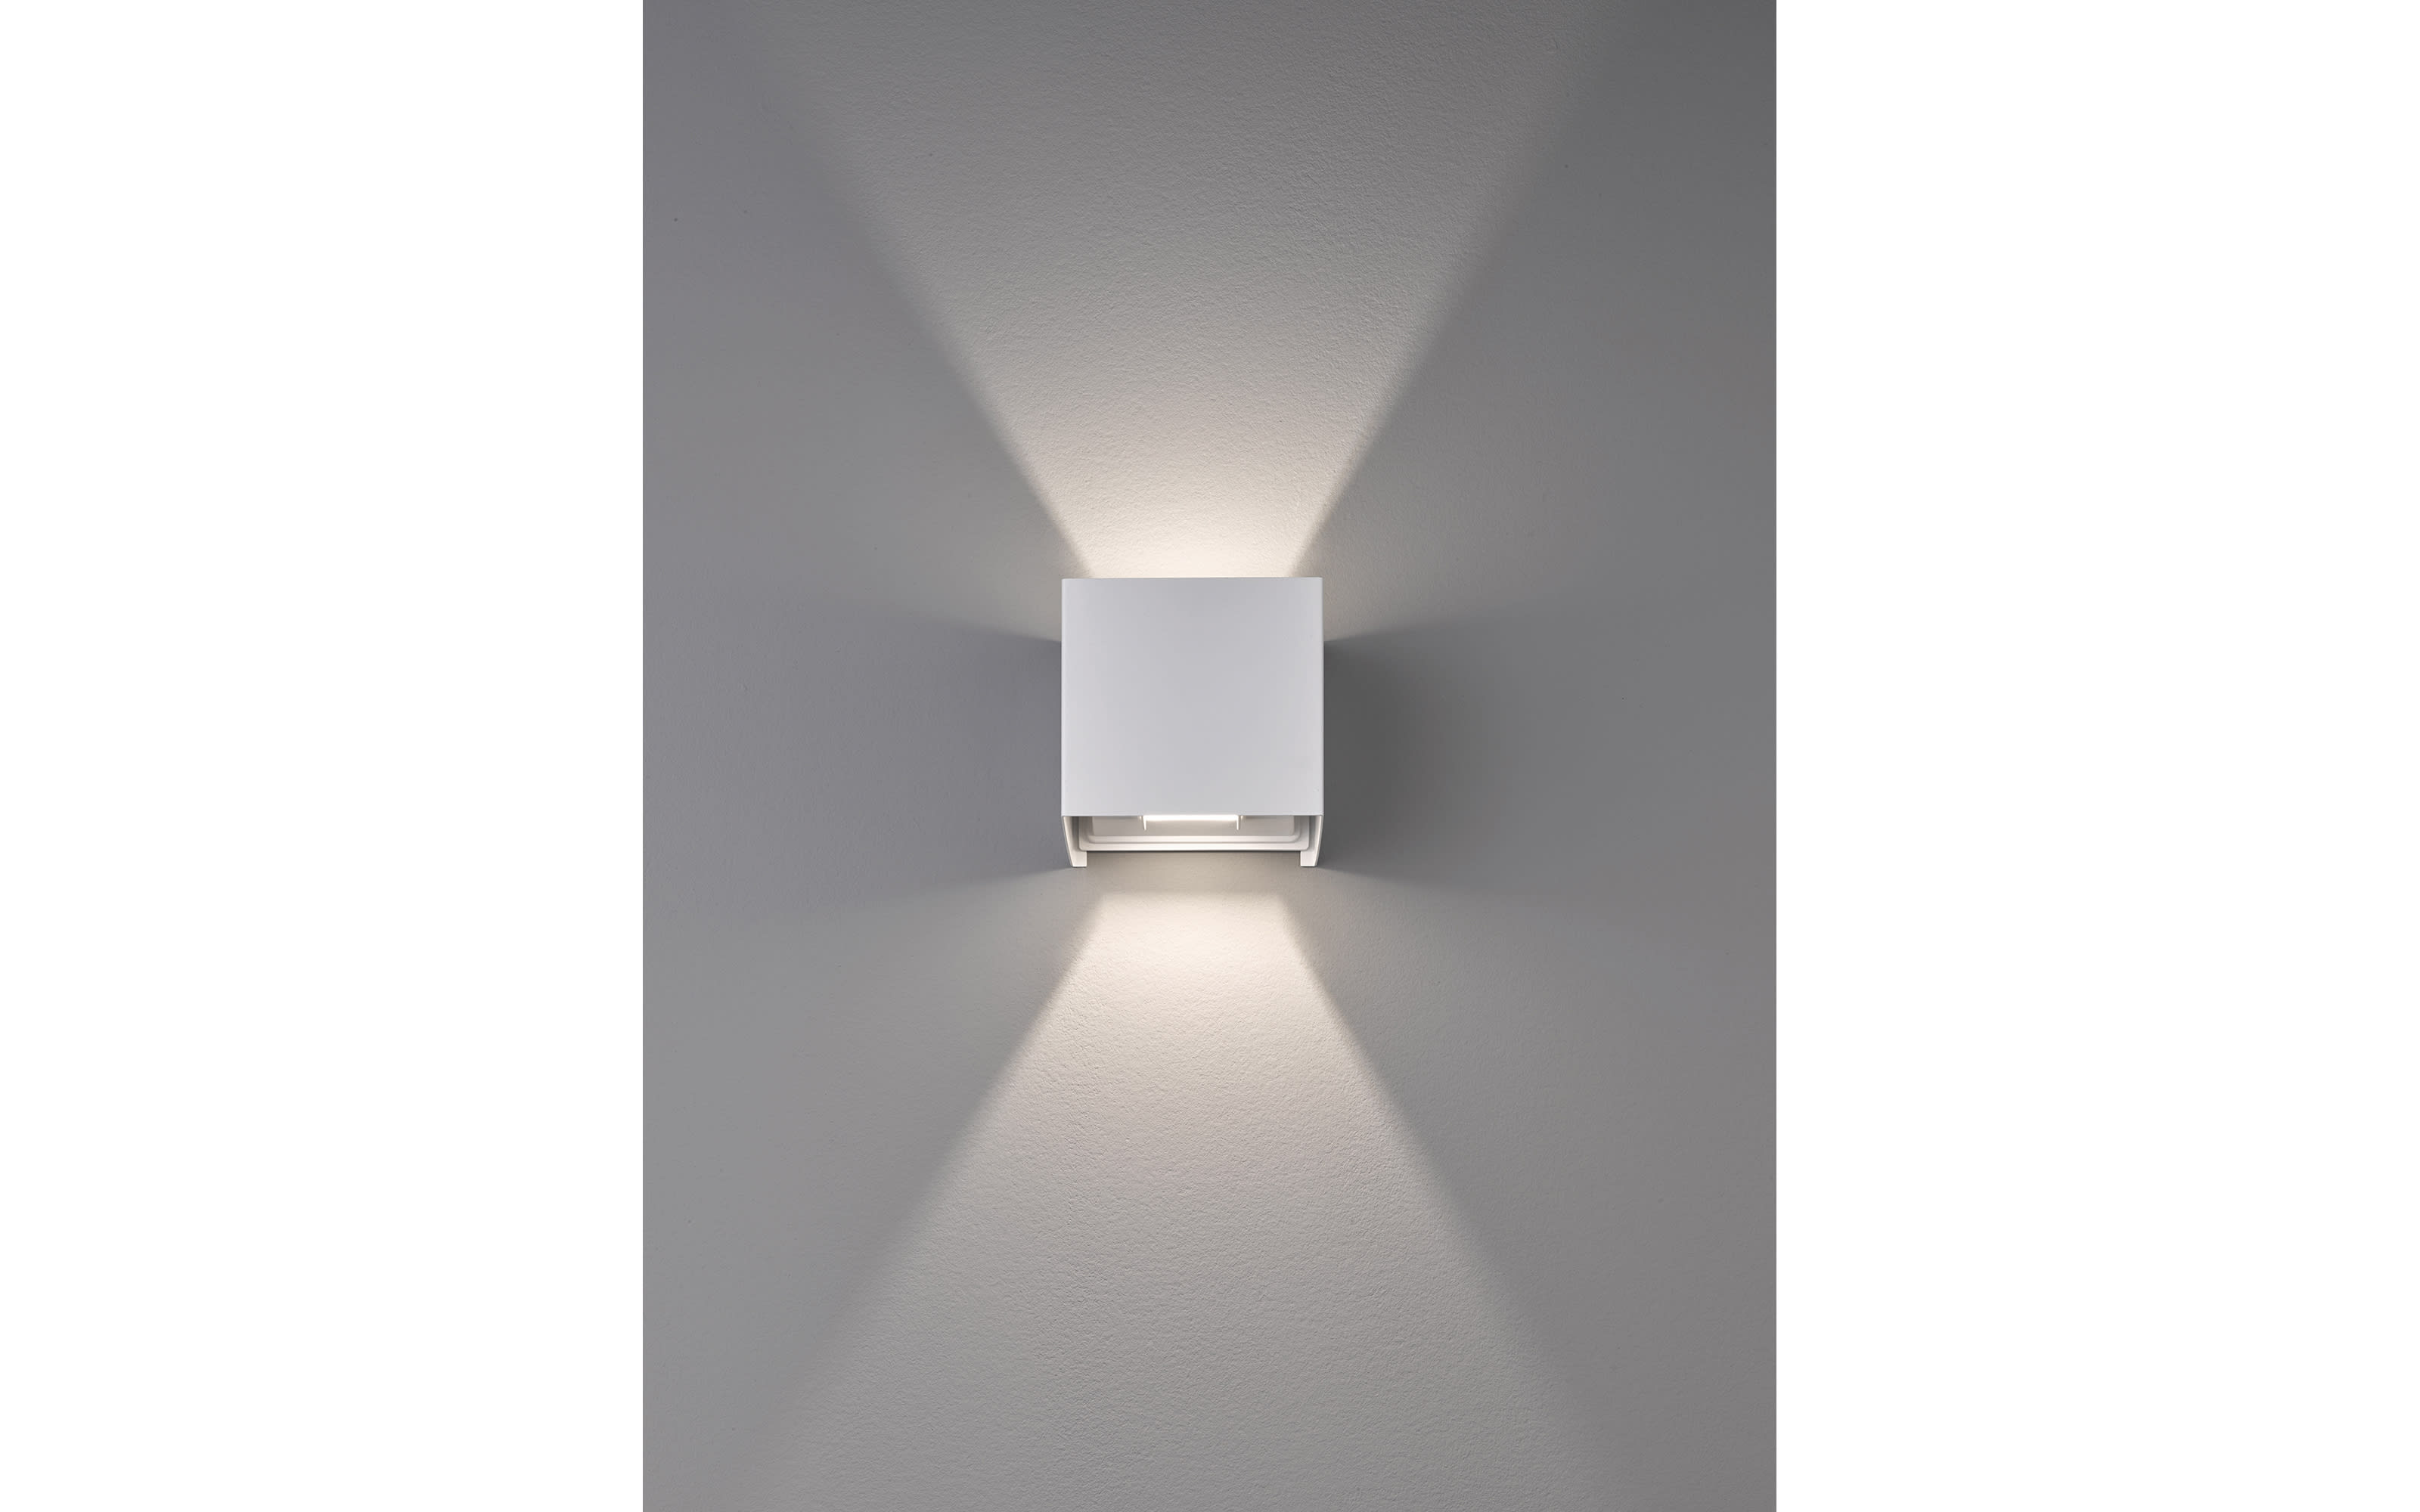 LED-Wandleuchte Wall IP44, weiß matt, 10 cm